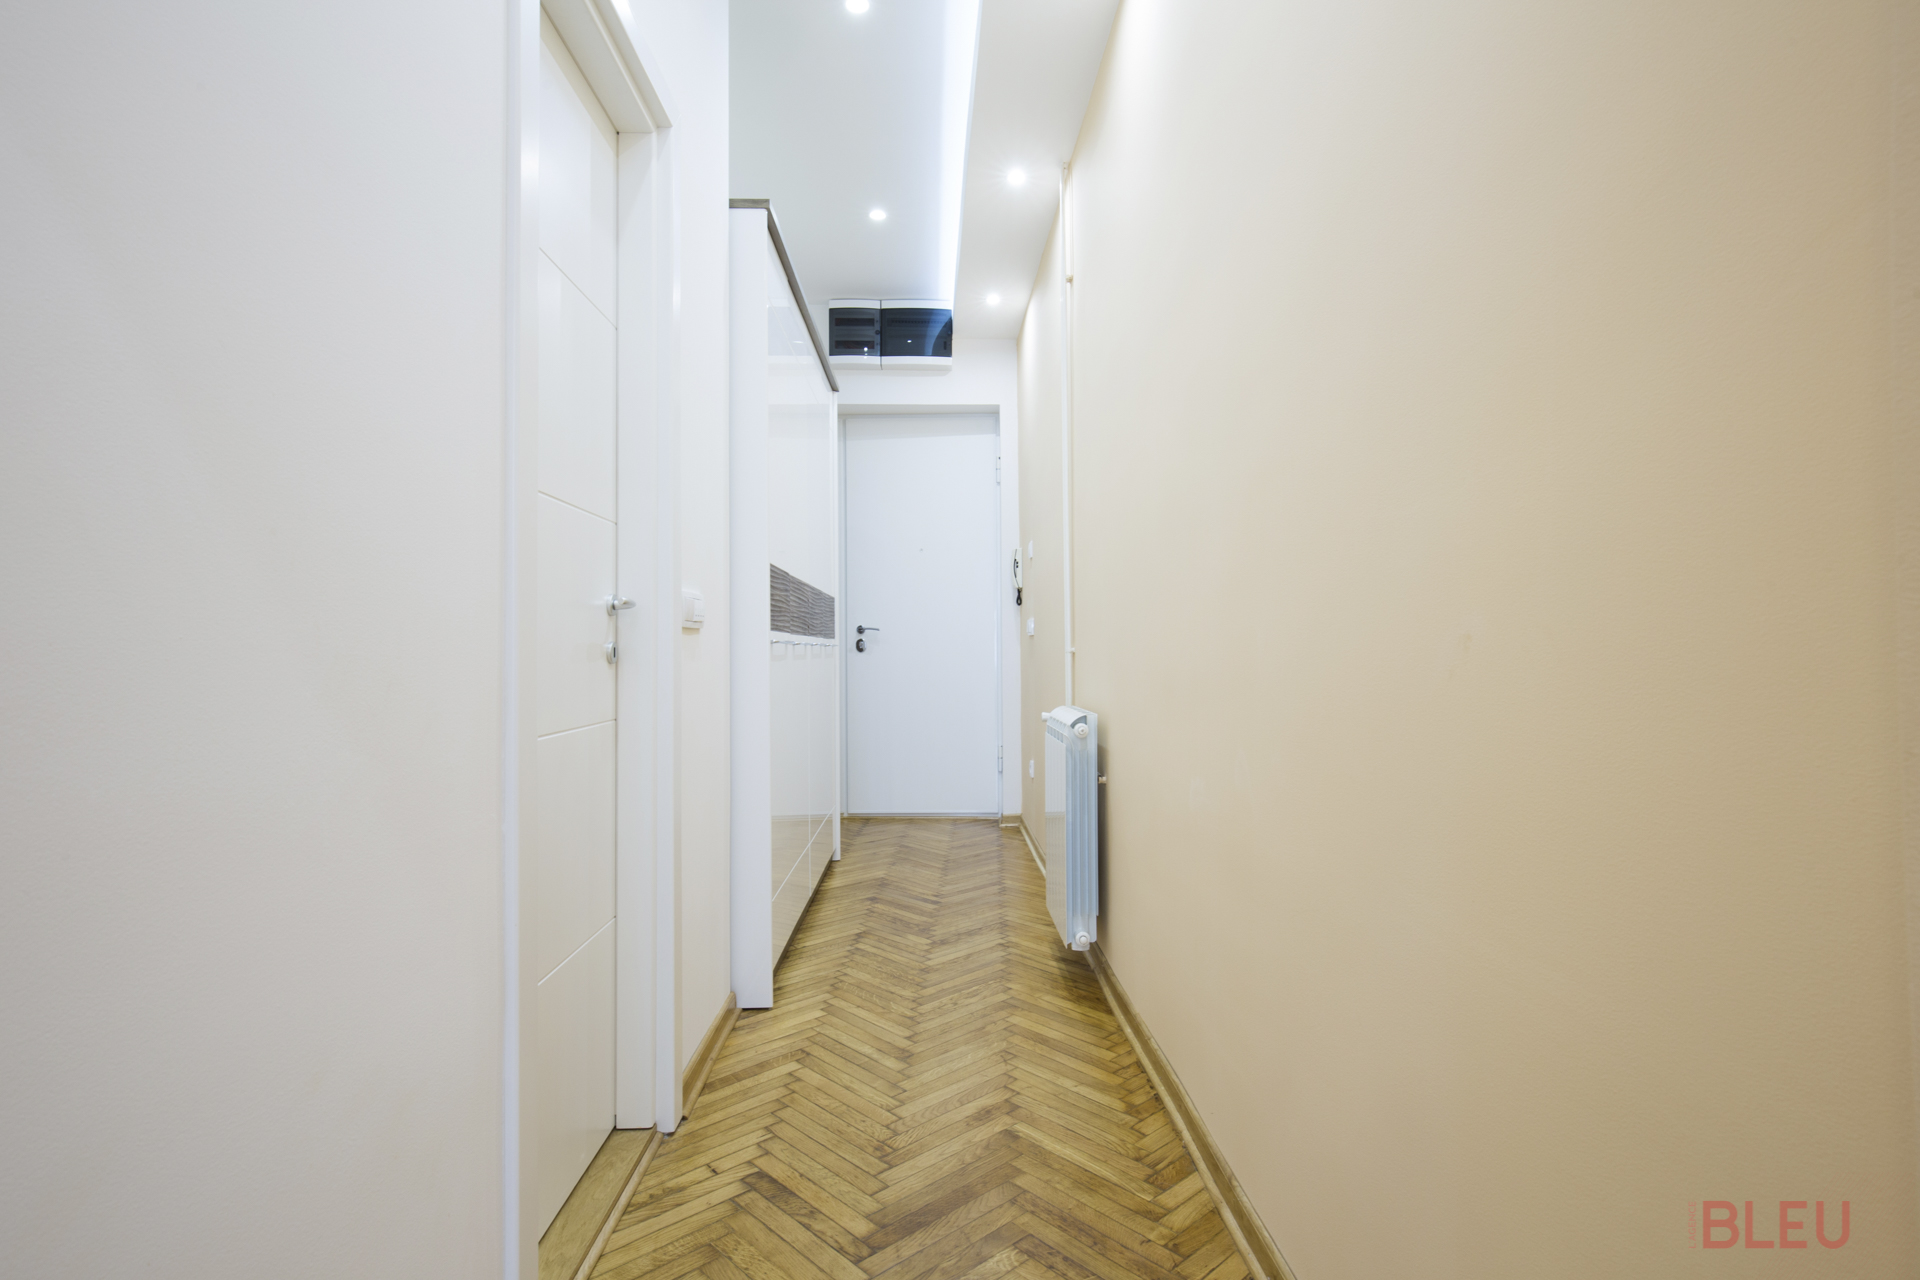 Dans les appartements haussmanniens, les longs couloirs aveugles peuvent être transformés pour optimiser l'espace. Vous pouvez les diviser en utilisant des crochets ou des formes en S pour créer une impression de changement de pièce. Changer la couleur des murs ou du sol renforce cet effet. En retirant une cloison, vous pouvez ajouter des espaces de rangement le long du couloir, le transformant en une pièce fonctionnelle plutôt qu'un simple passage. L'ajout d'une verrière apporte de la lumière naturelle et crée un élément qui rompt la linéarité du couloir.